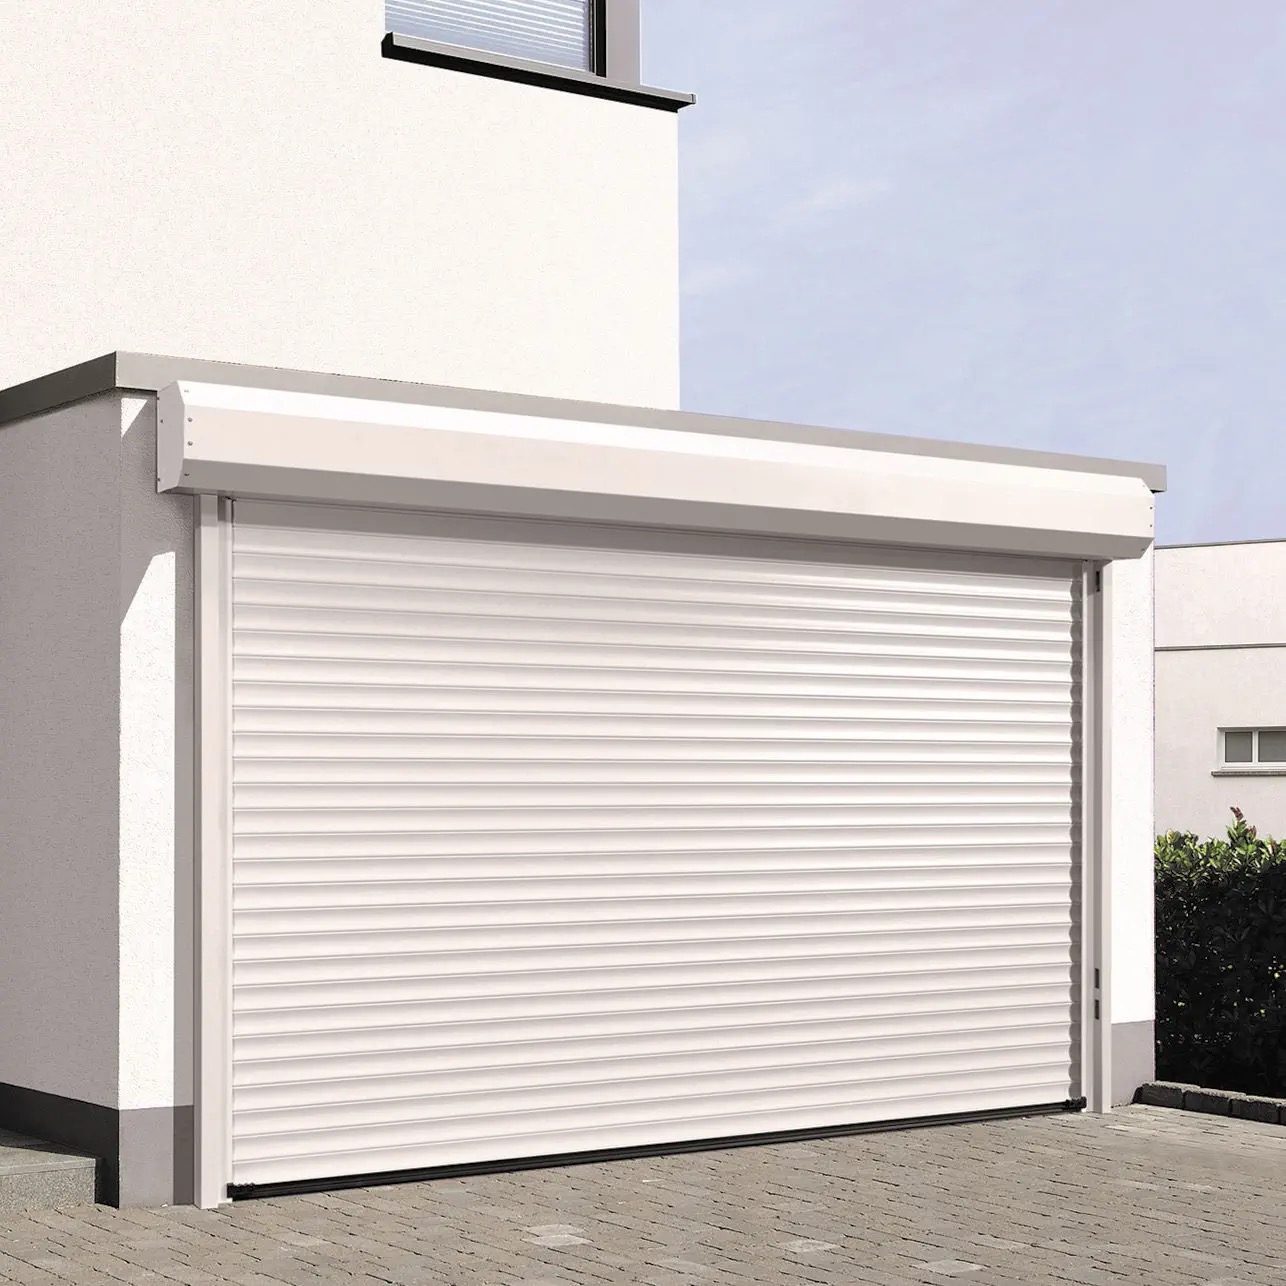 Portes Enrotllables per a residencial, garatges, pàrquing o locals